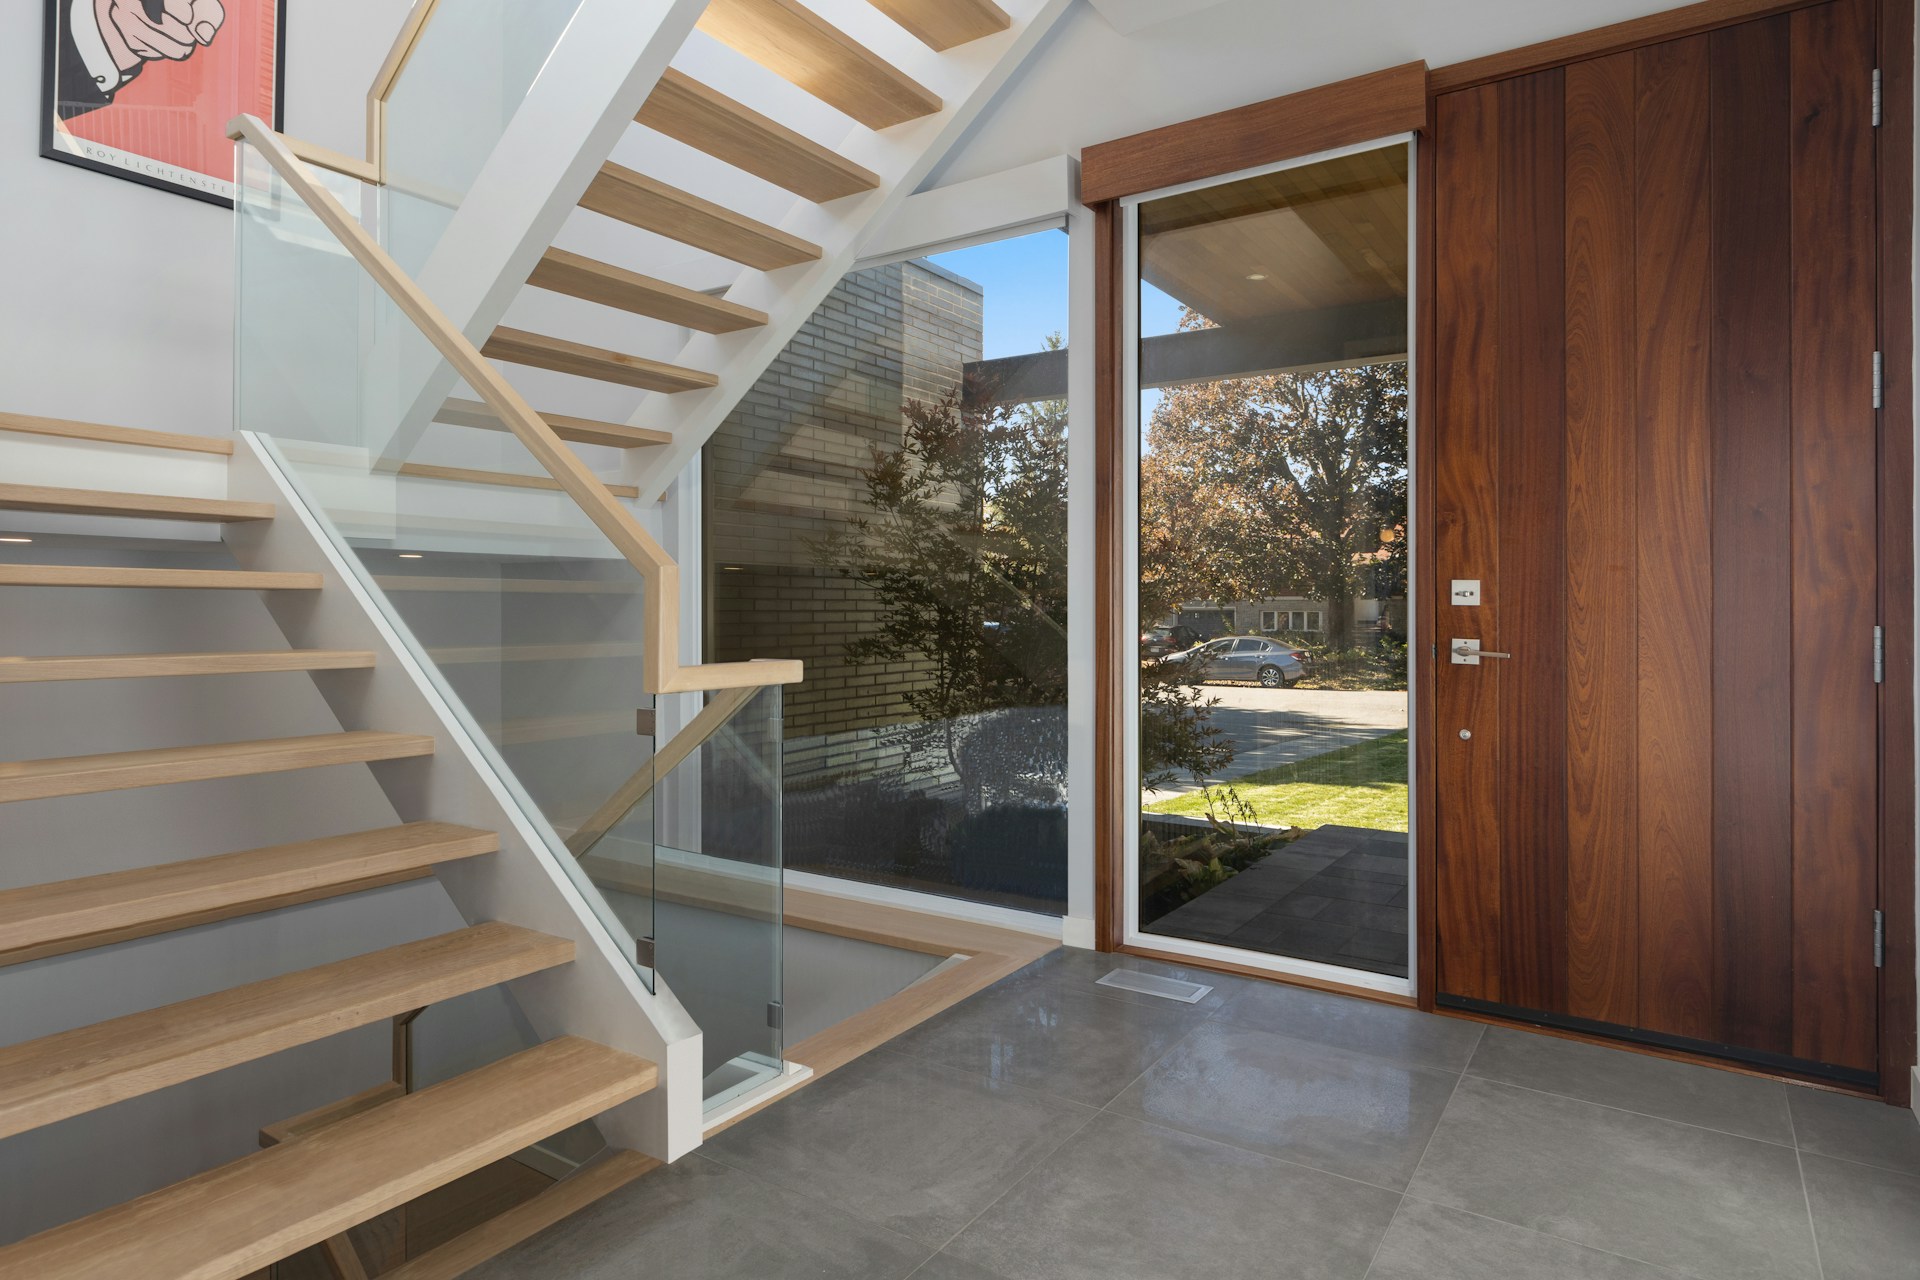 10 Best Bifold Doors for Your Home